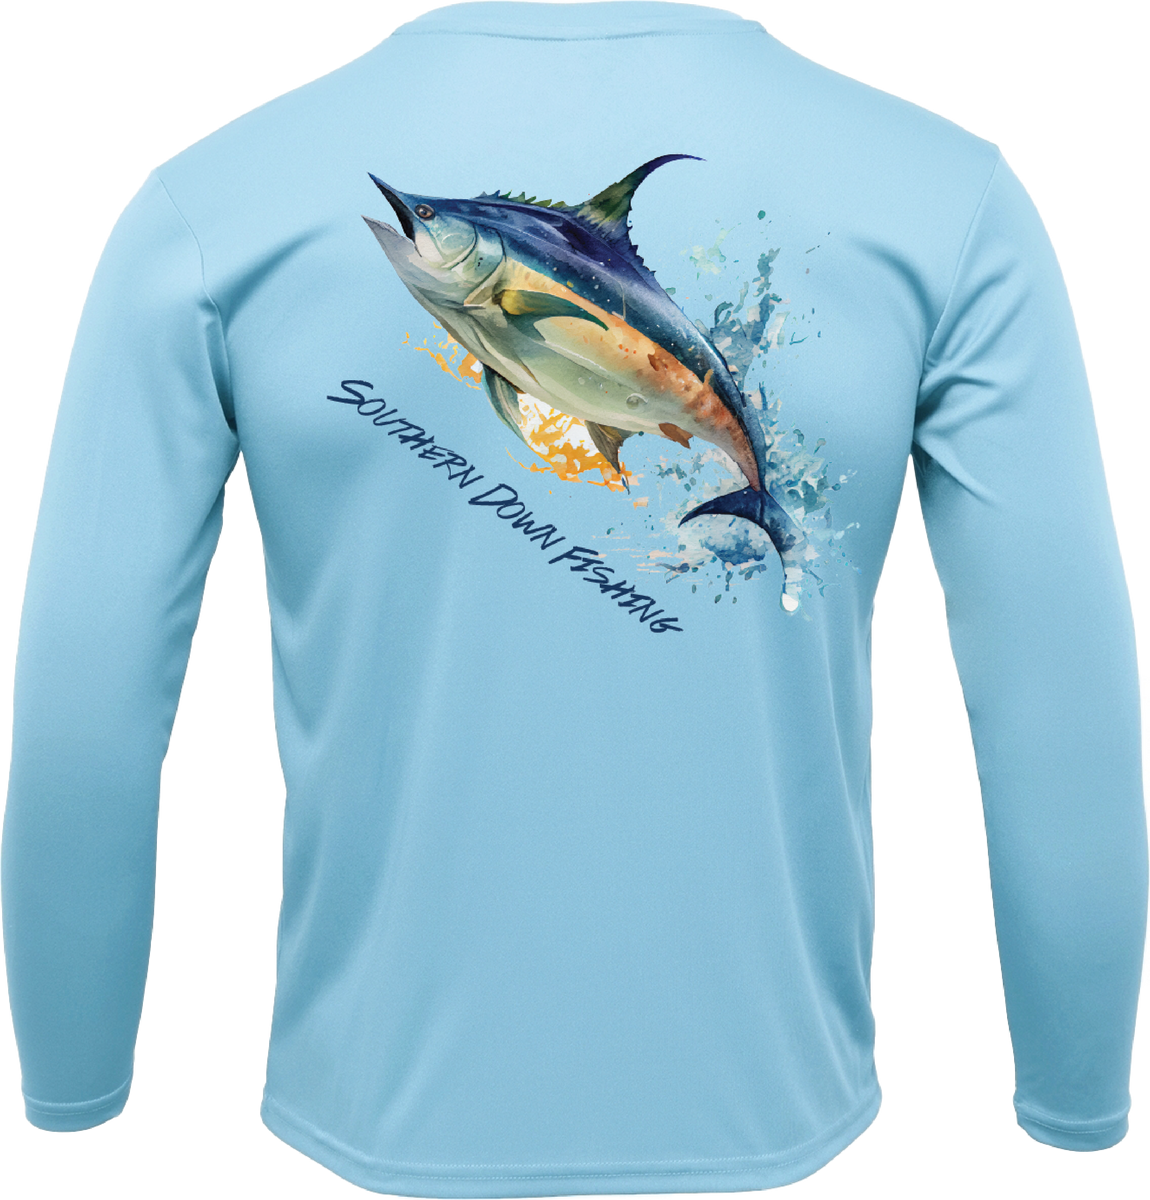 Tunalicious Tuna T-Shirt | Deep Sea Tuna Fishing Shirt